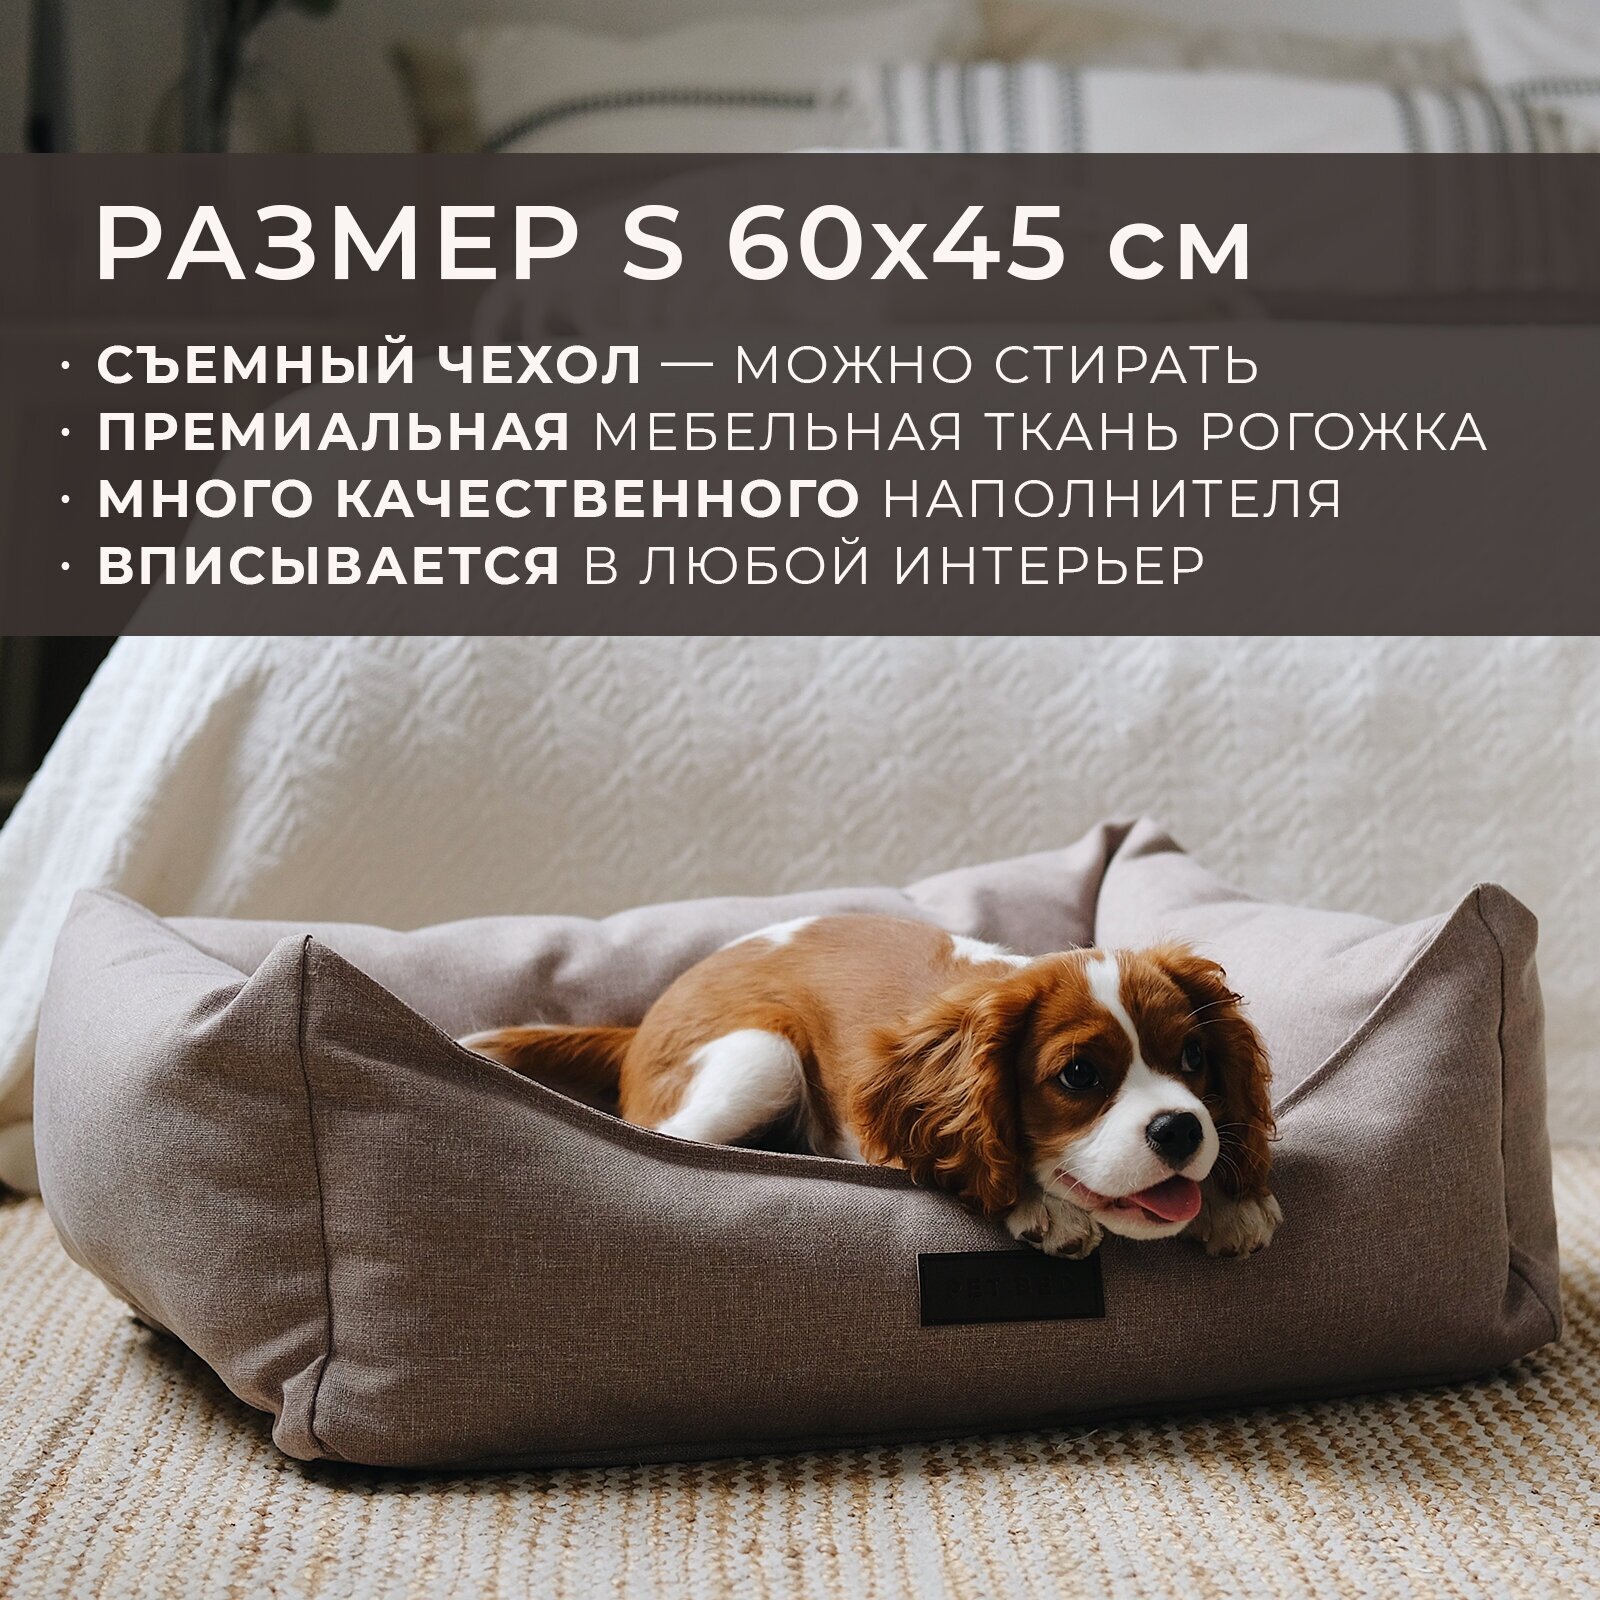 Лежанка для животных со съемным чехлом PET BED Рогожка, размер S 60х45 см, бежевая - фотография № 1